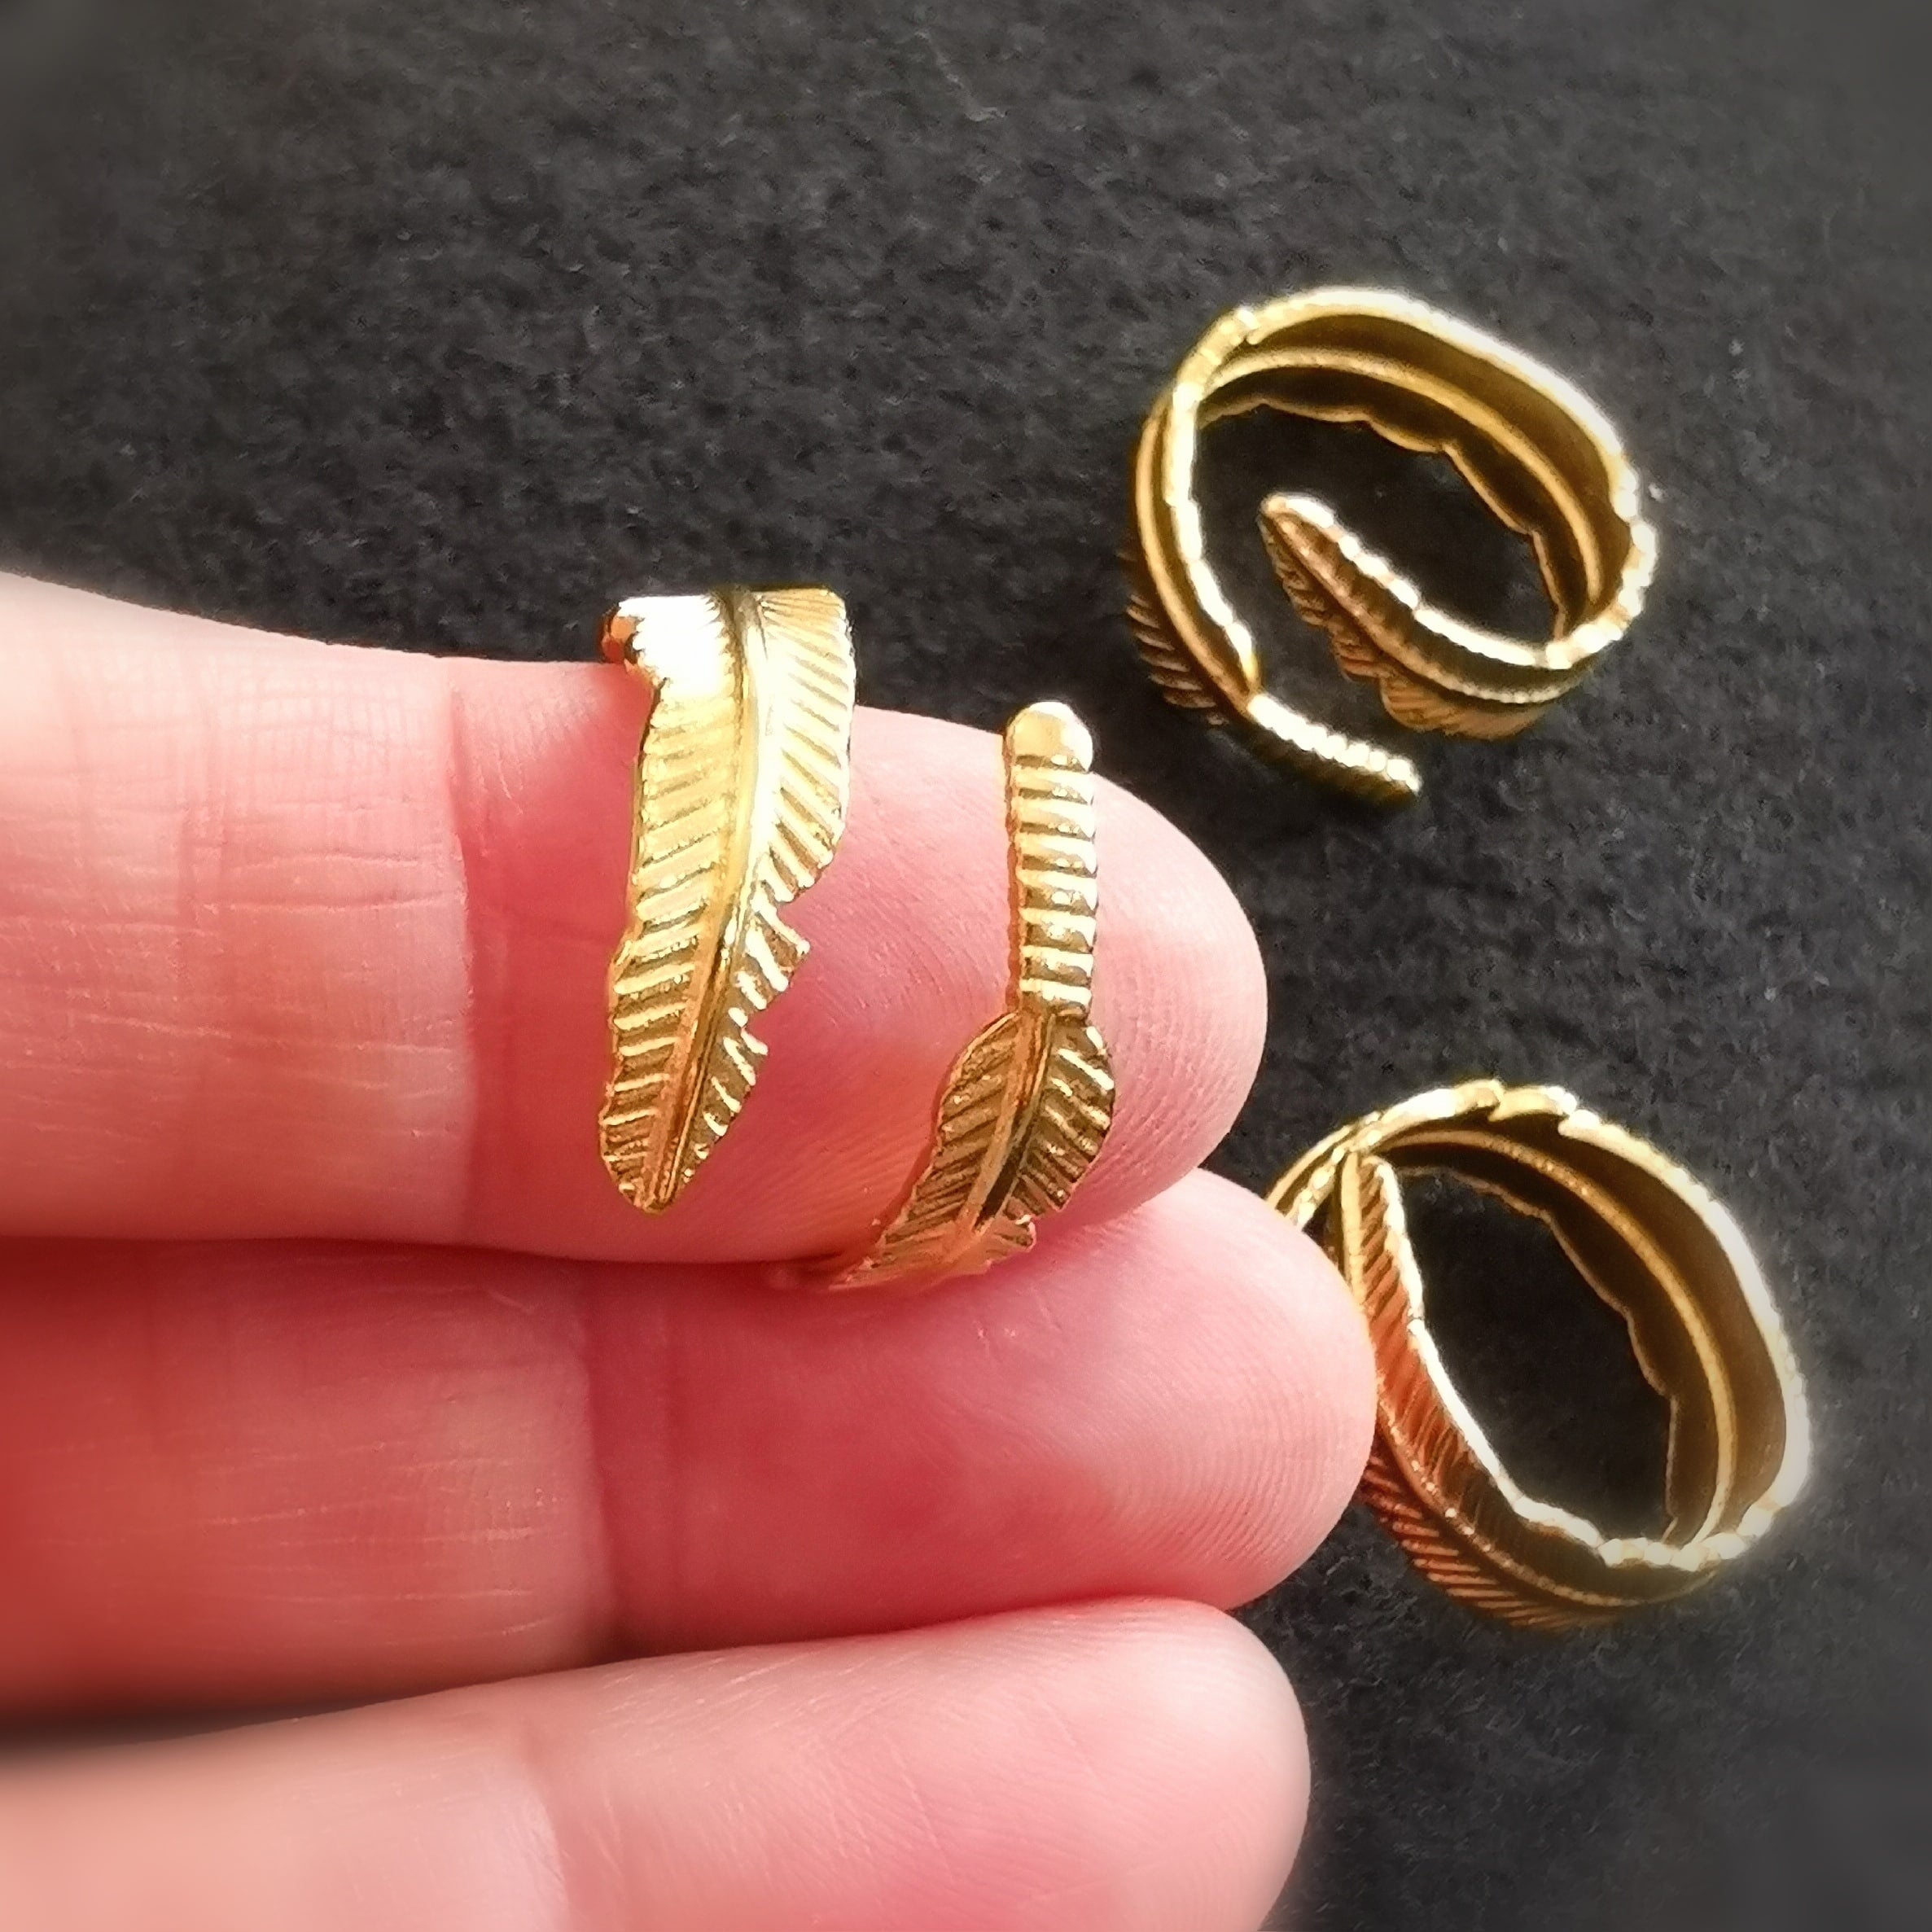 Engelsfeder Feder Gold Ring - Leichtigkeit und Glück